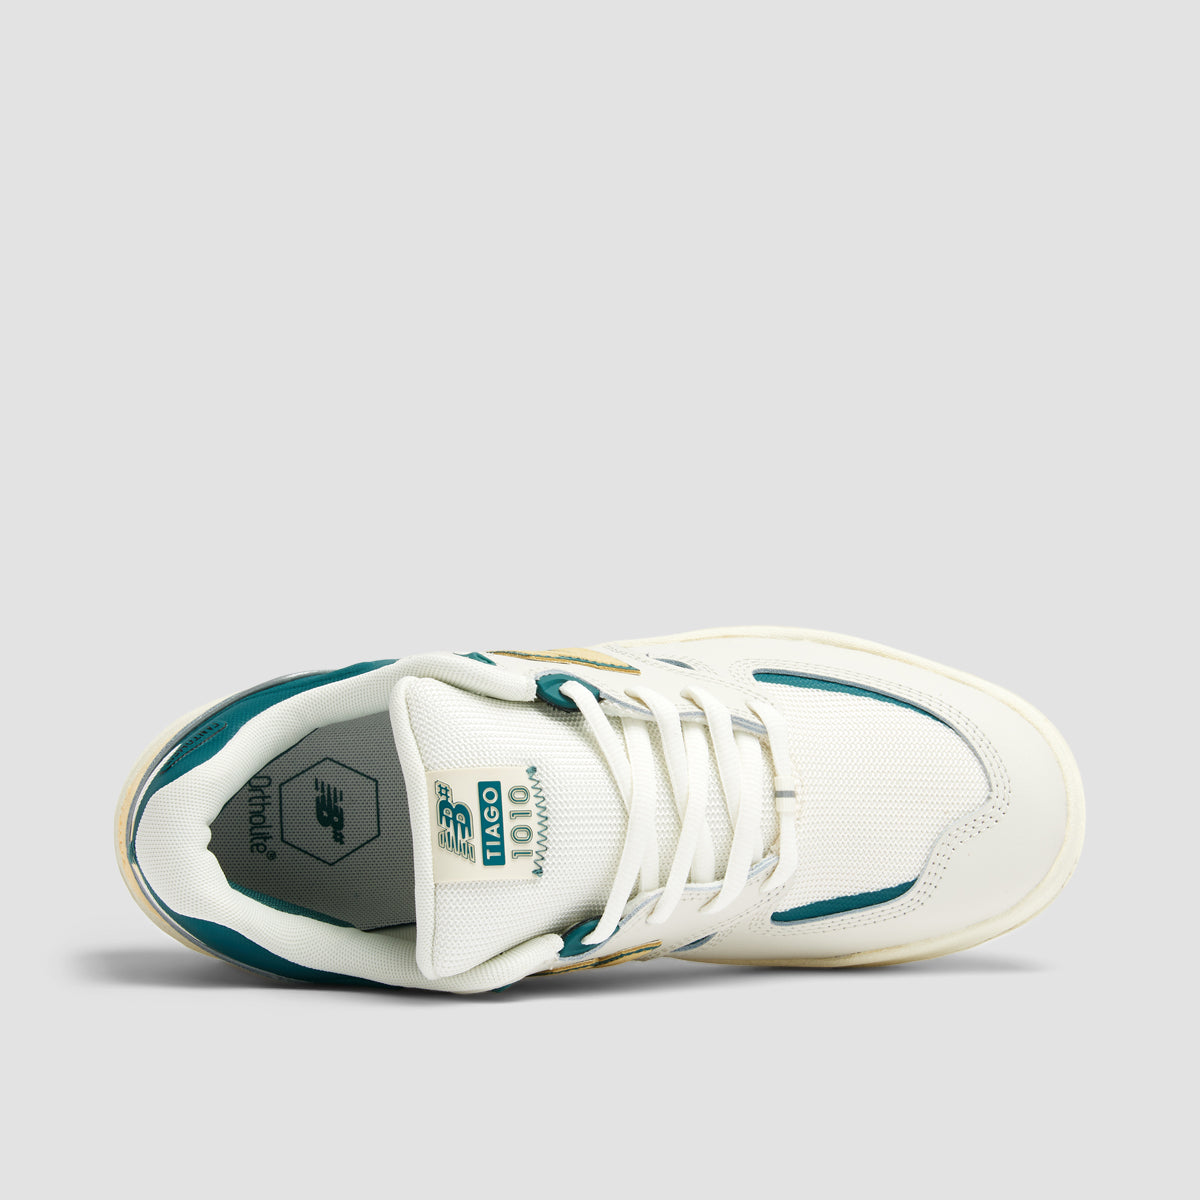 New Balance Numeric Tiago Lemos 1010 Shoes - White/New Spruce